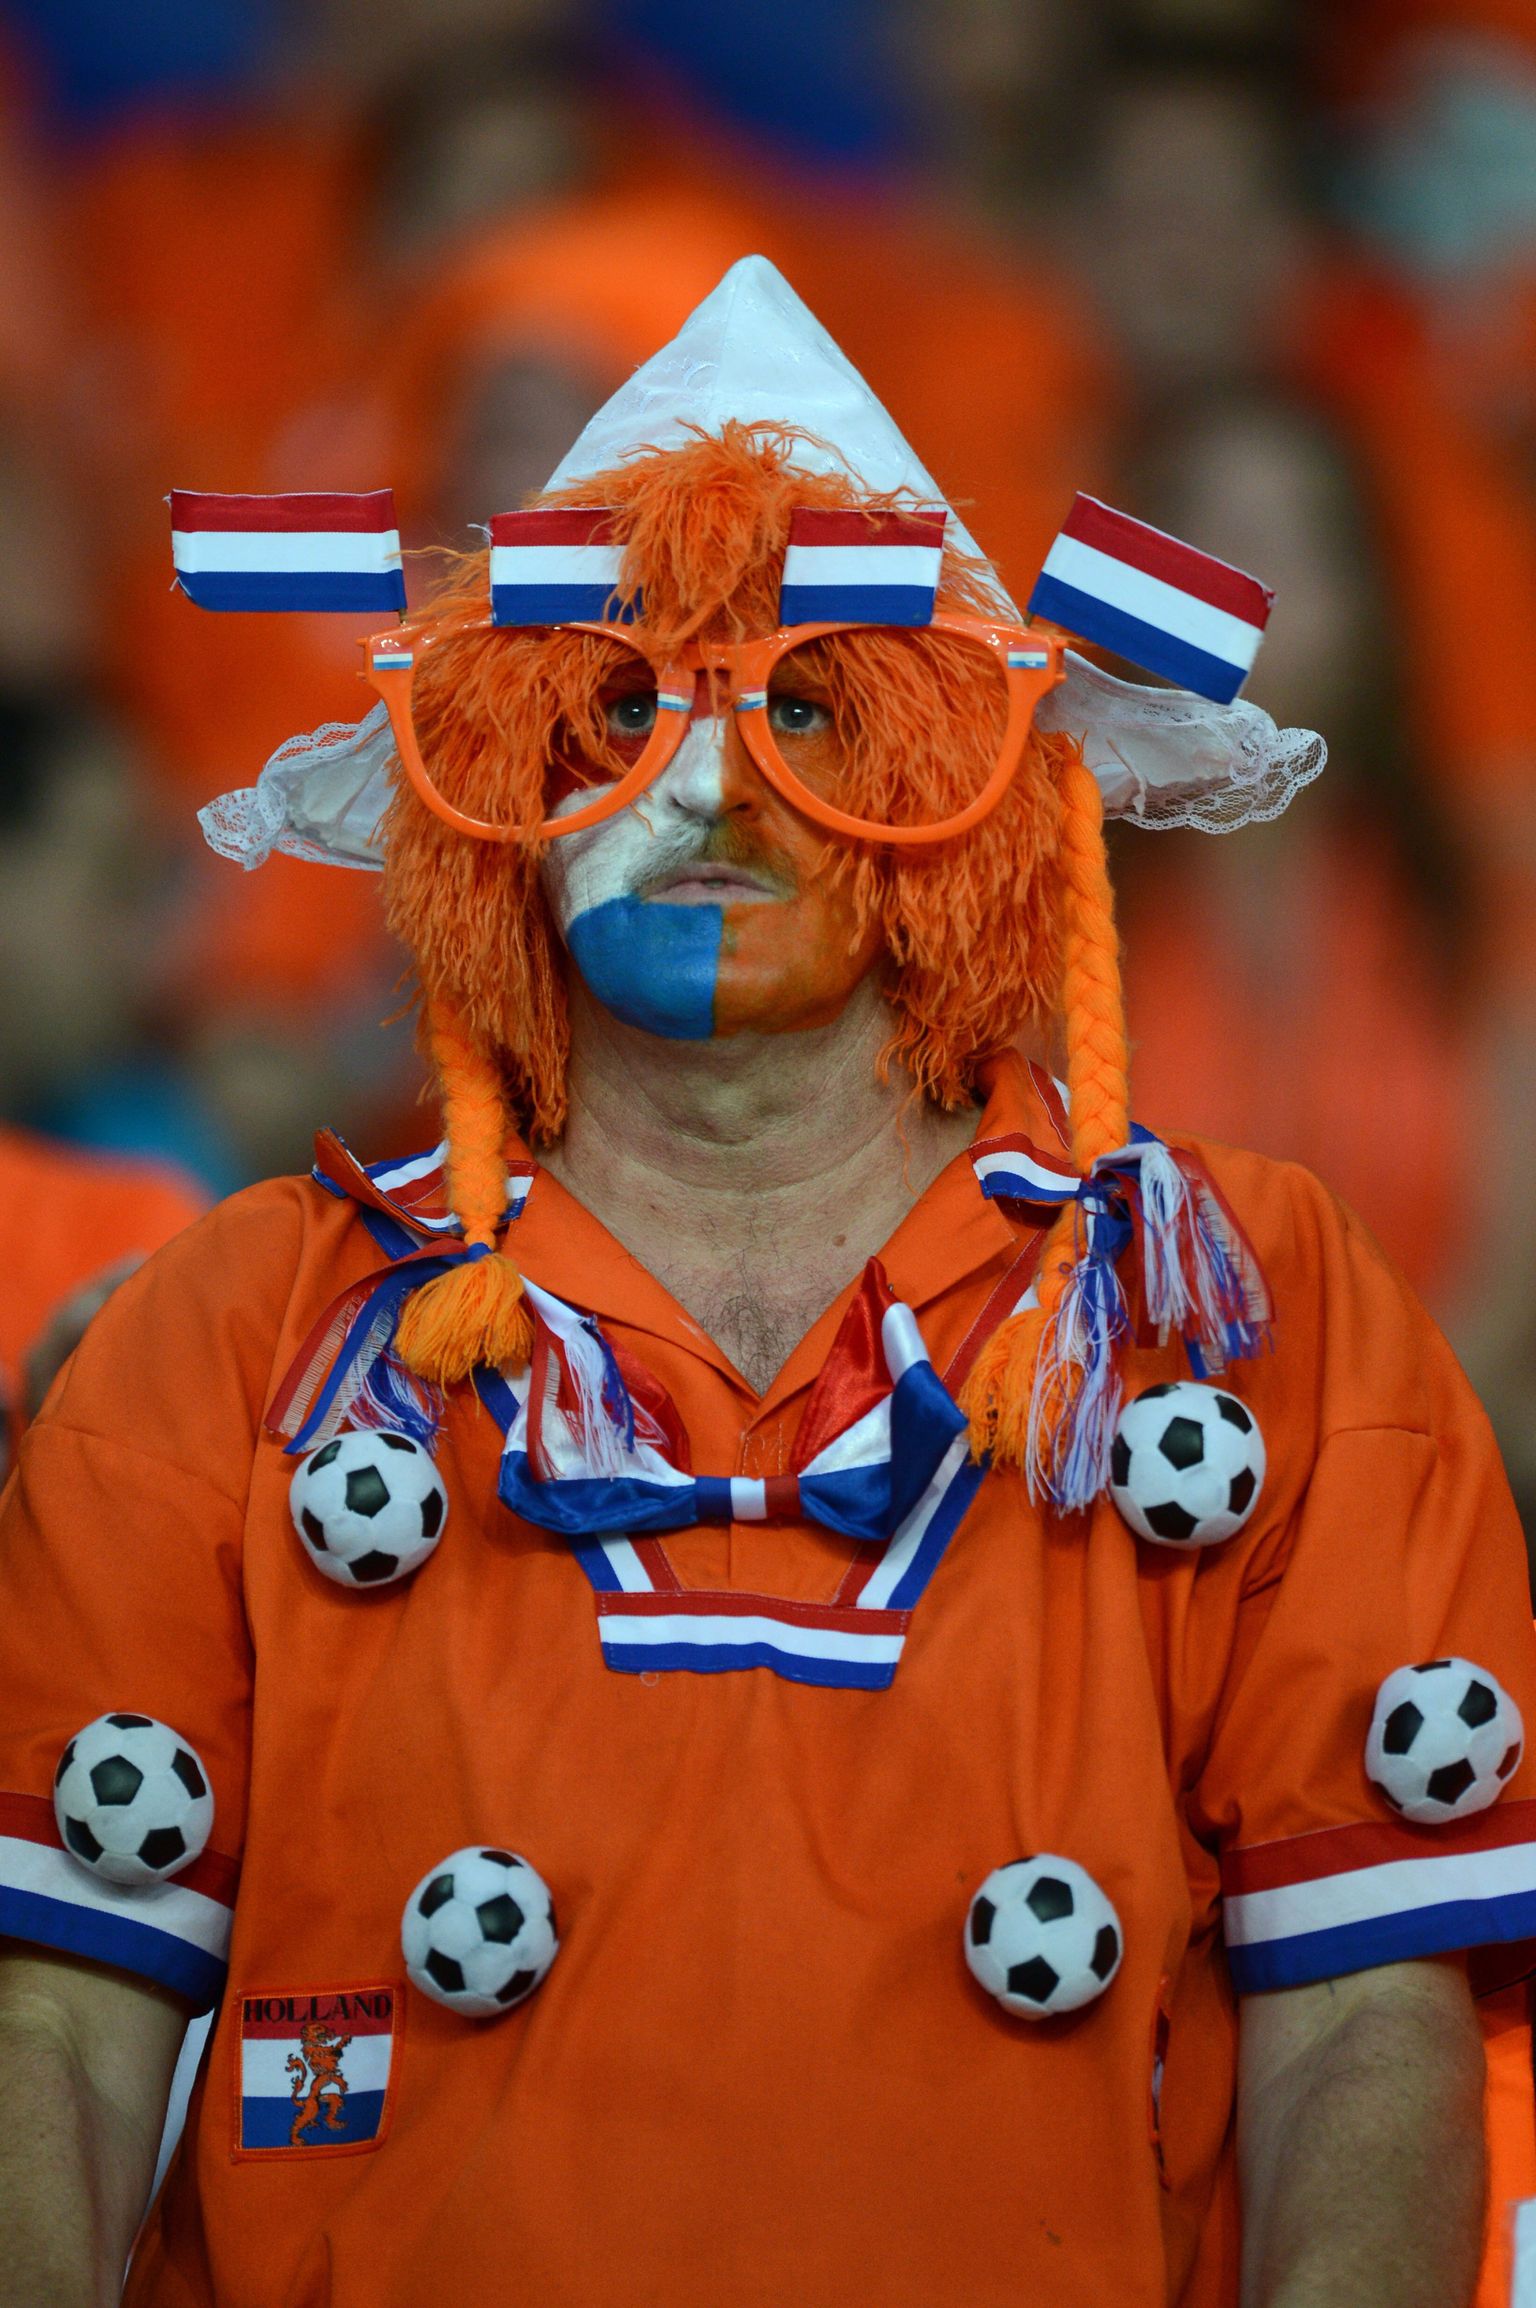 Hollandi sotsid haistavad valimisvõitu.
Pildil Hollandi jalgpallifänn.